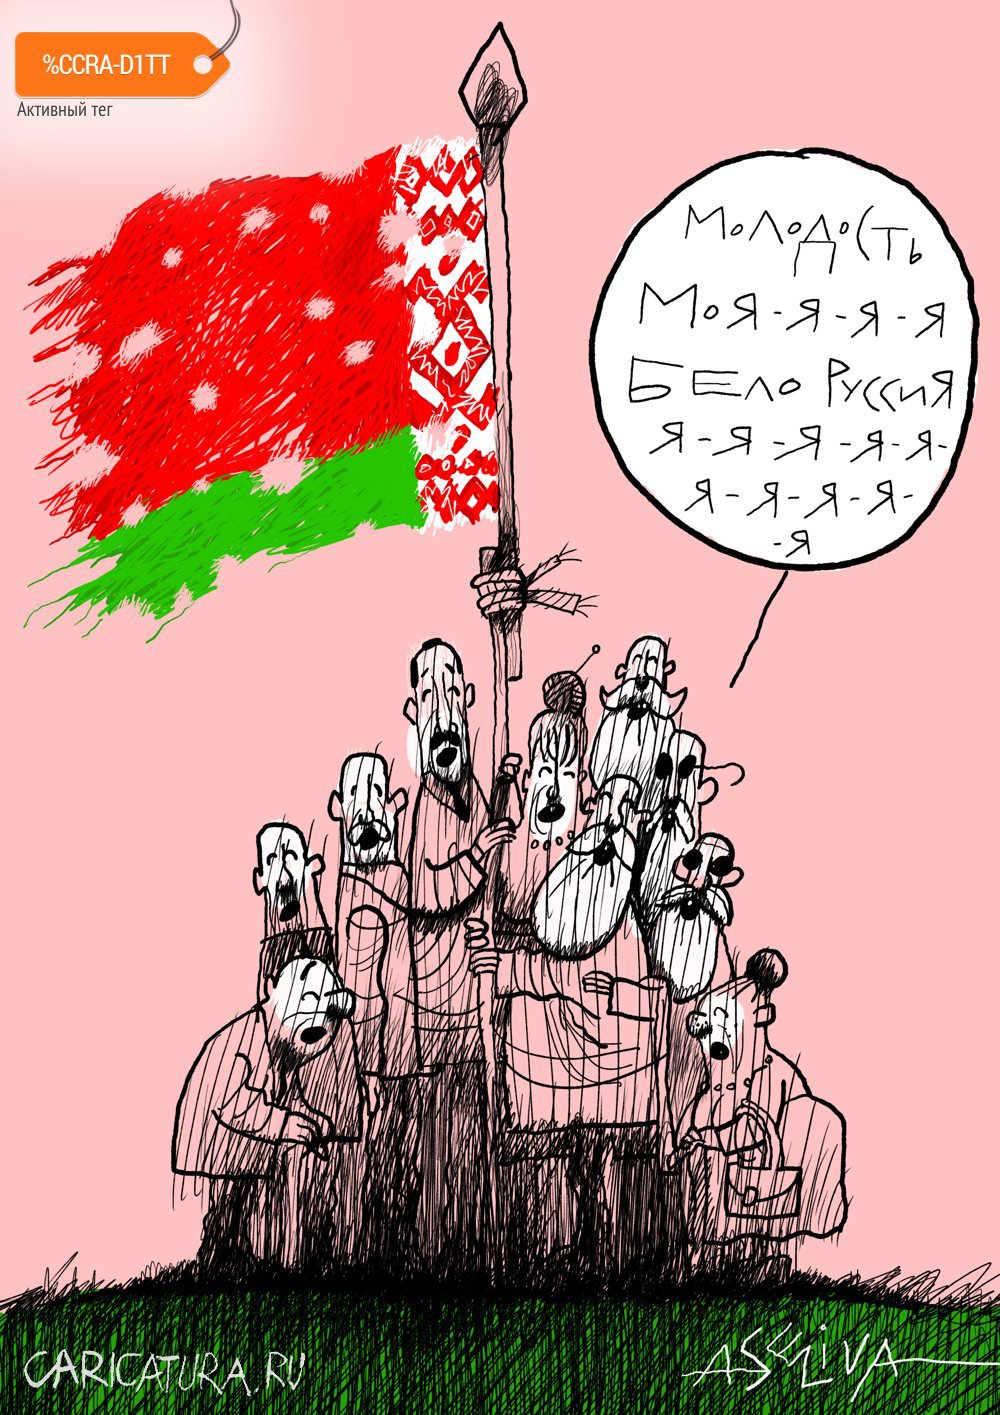 Карикатура "Молодость моя - Белоруссия", Андрей Селиванов